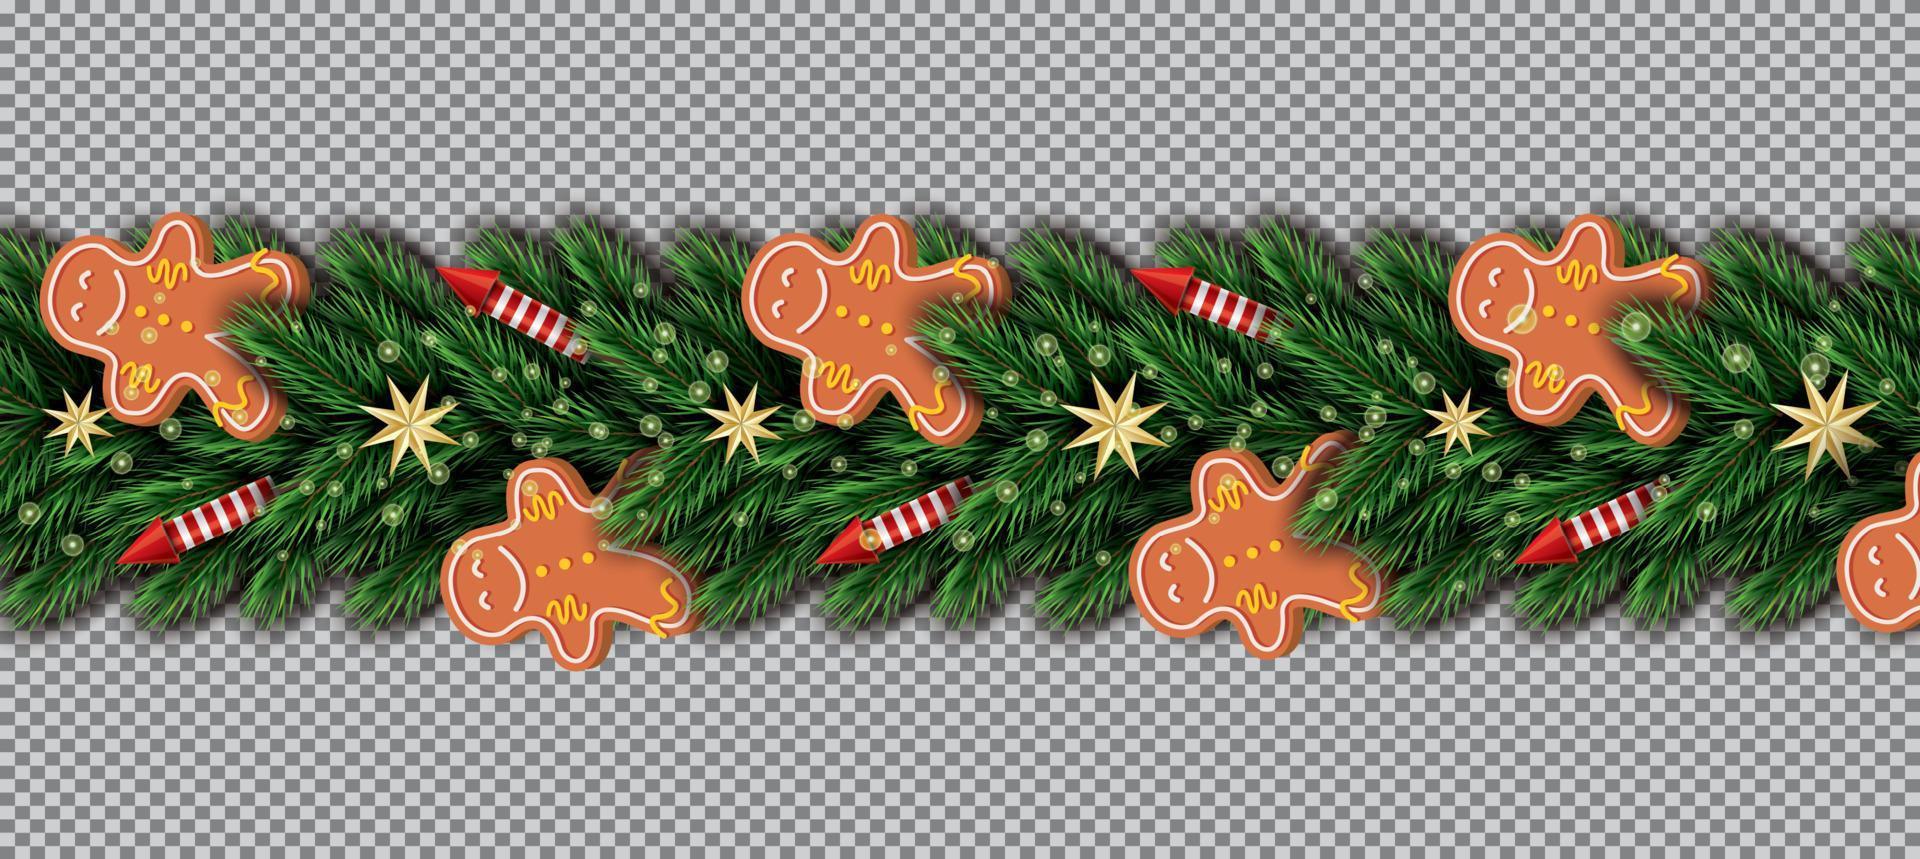 grenze mit lebkuchenmann, weihnachtsbaumzweigen, goldenen sternen und roten raketen auf transparentem hintergrund. vektor